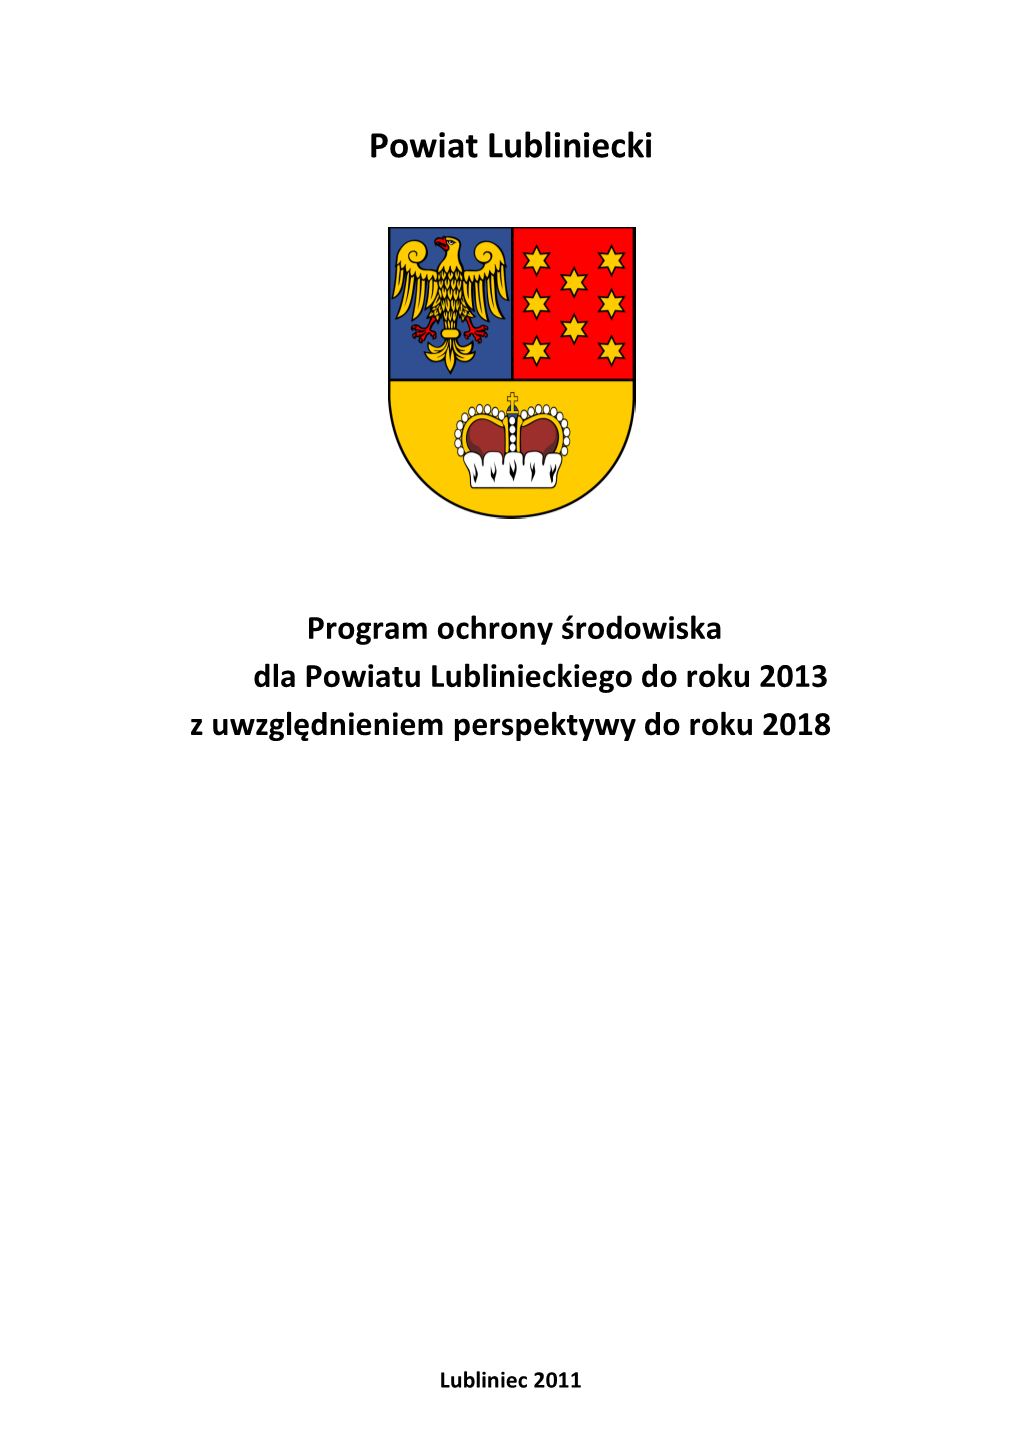 Program Ochrony Środowiska Dla Powiatu Lublinieckiego Do Roku 2013 Z Uwzględnieniem Perspektywy Do Roku 2018